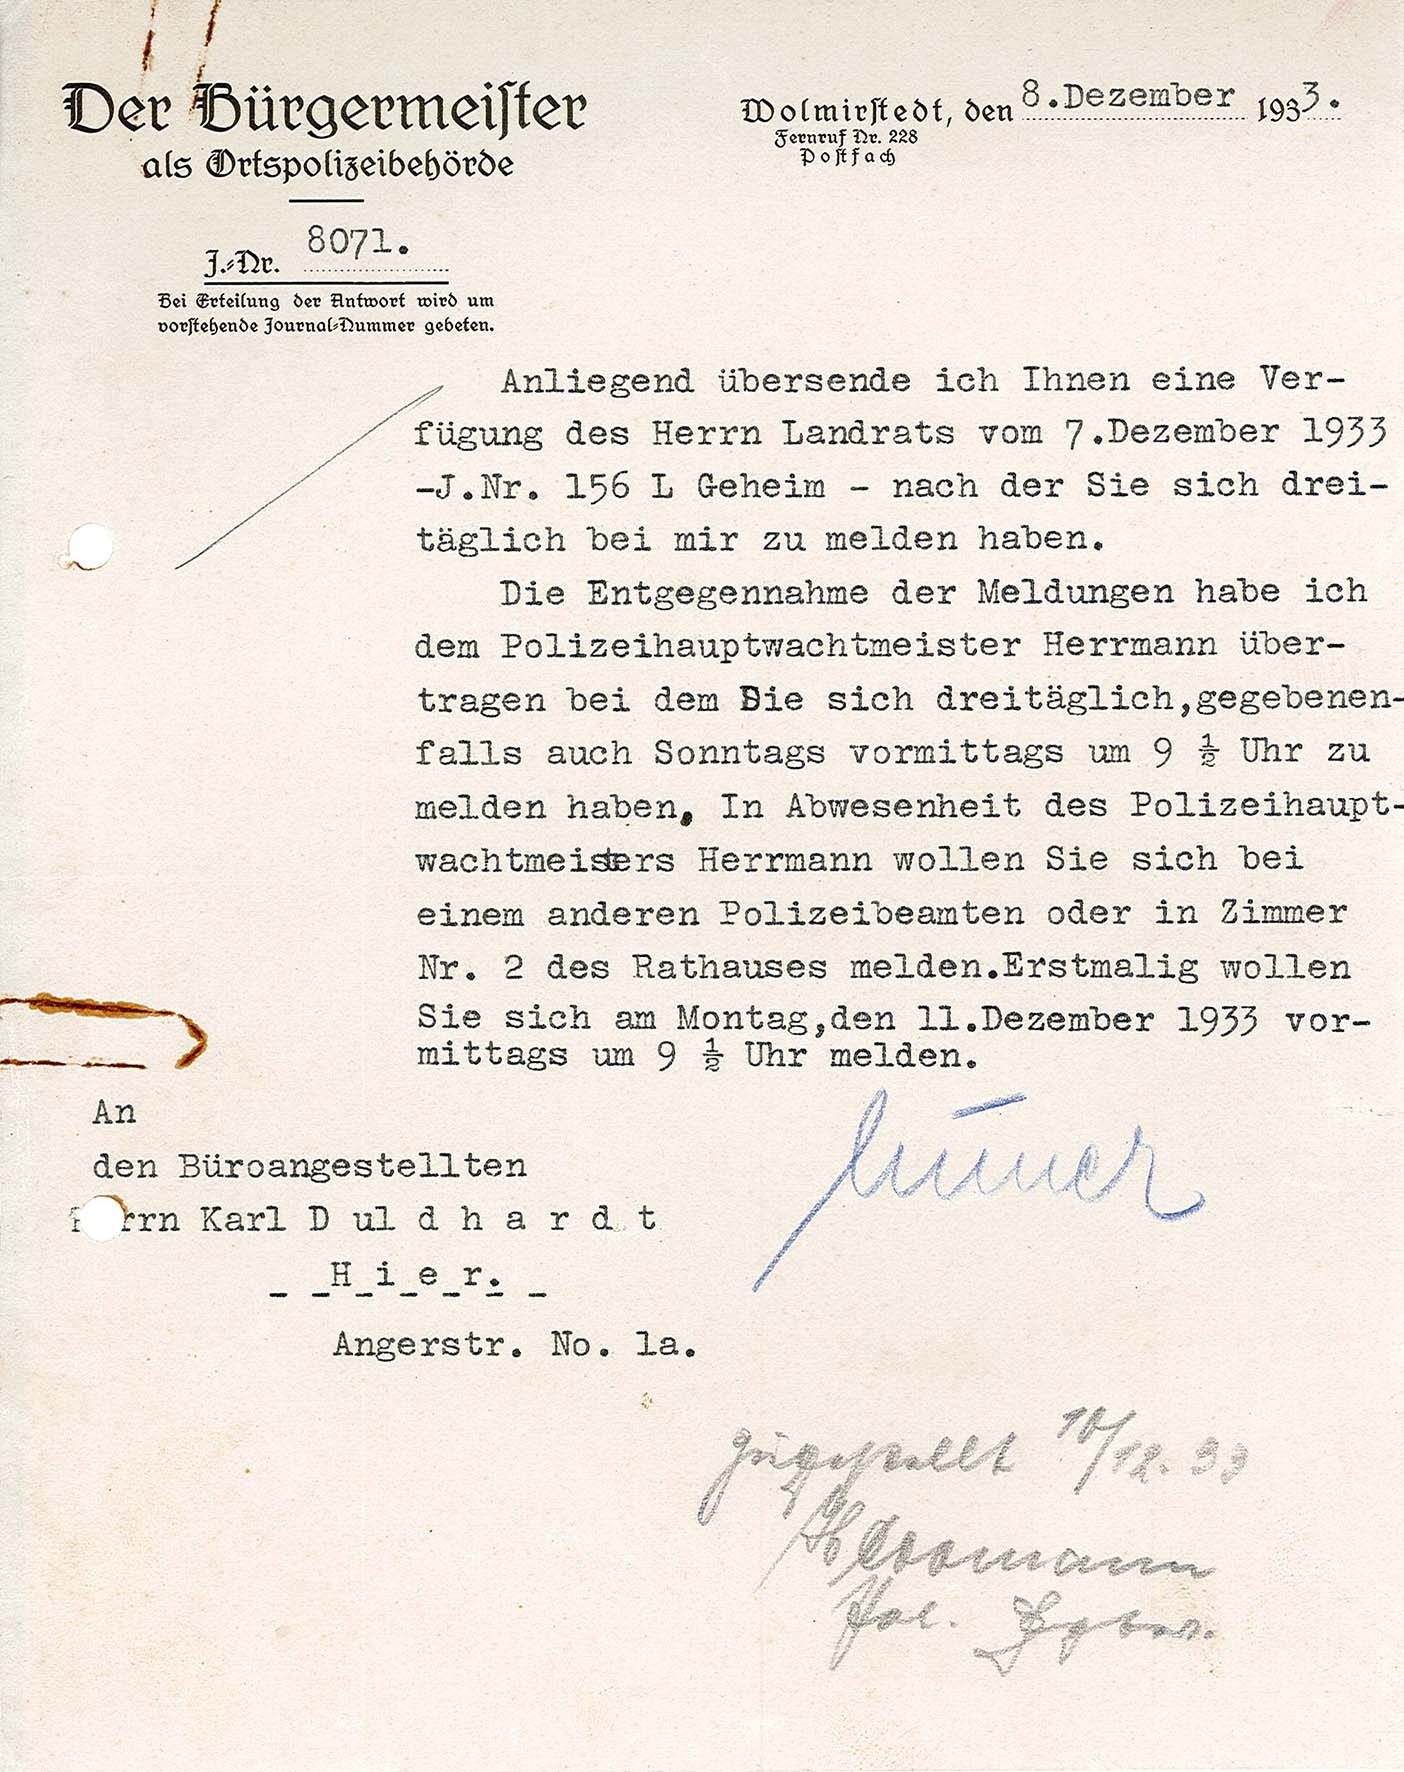 Information dreimalige Meldepflicht pro Tag für Karl Duldhardt, 8. Dezember 1933 (Museum Wolmirstedt RR-F)